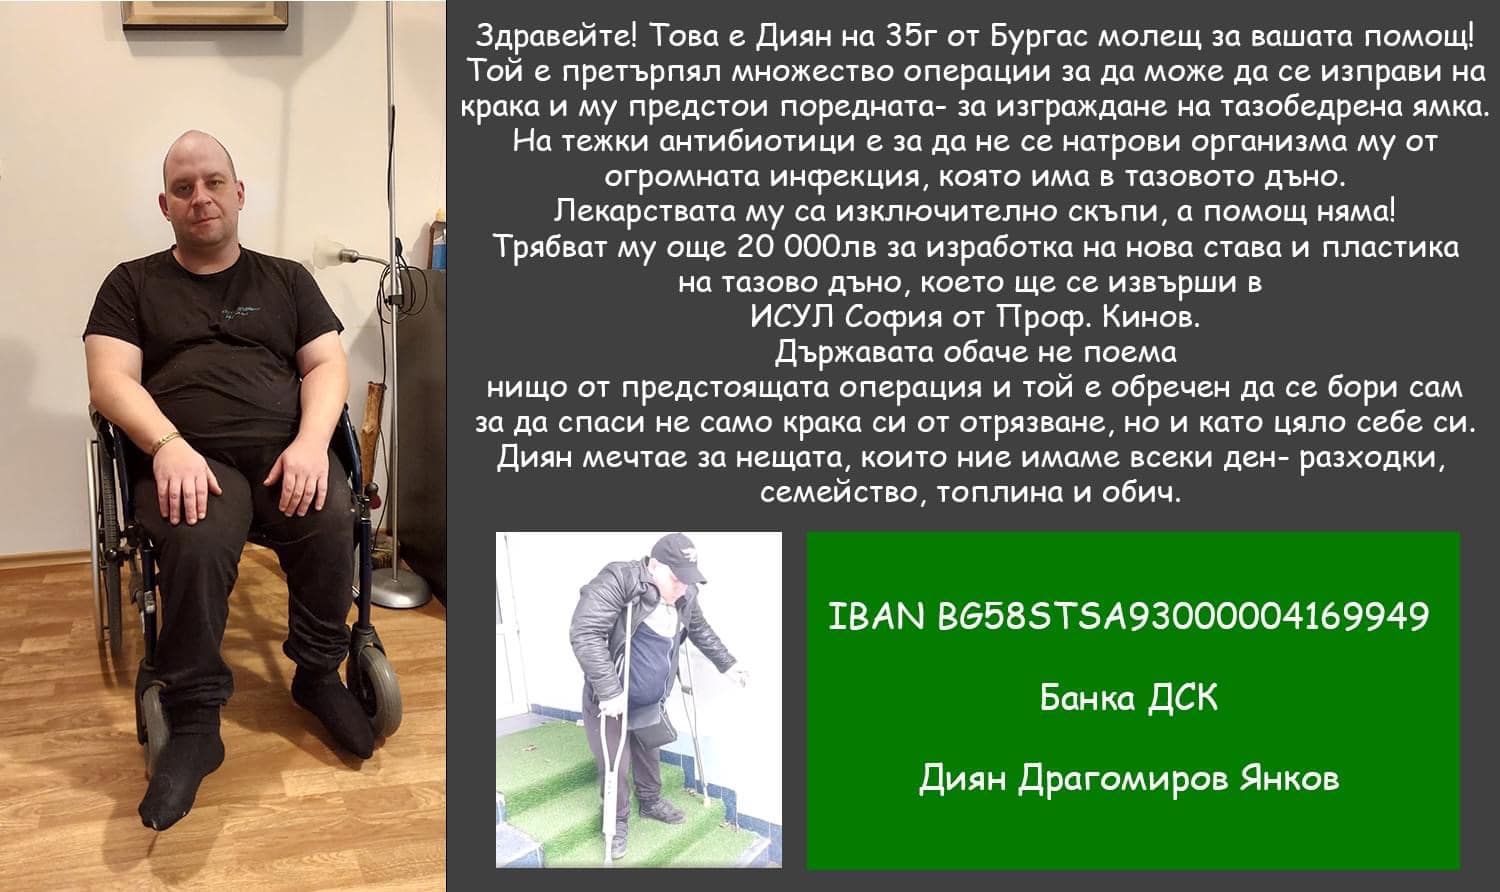 35-годишният Диян Янков от Бургас може да загуби краката си.
8000